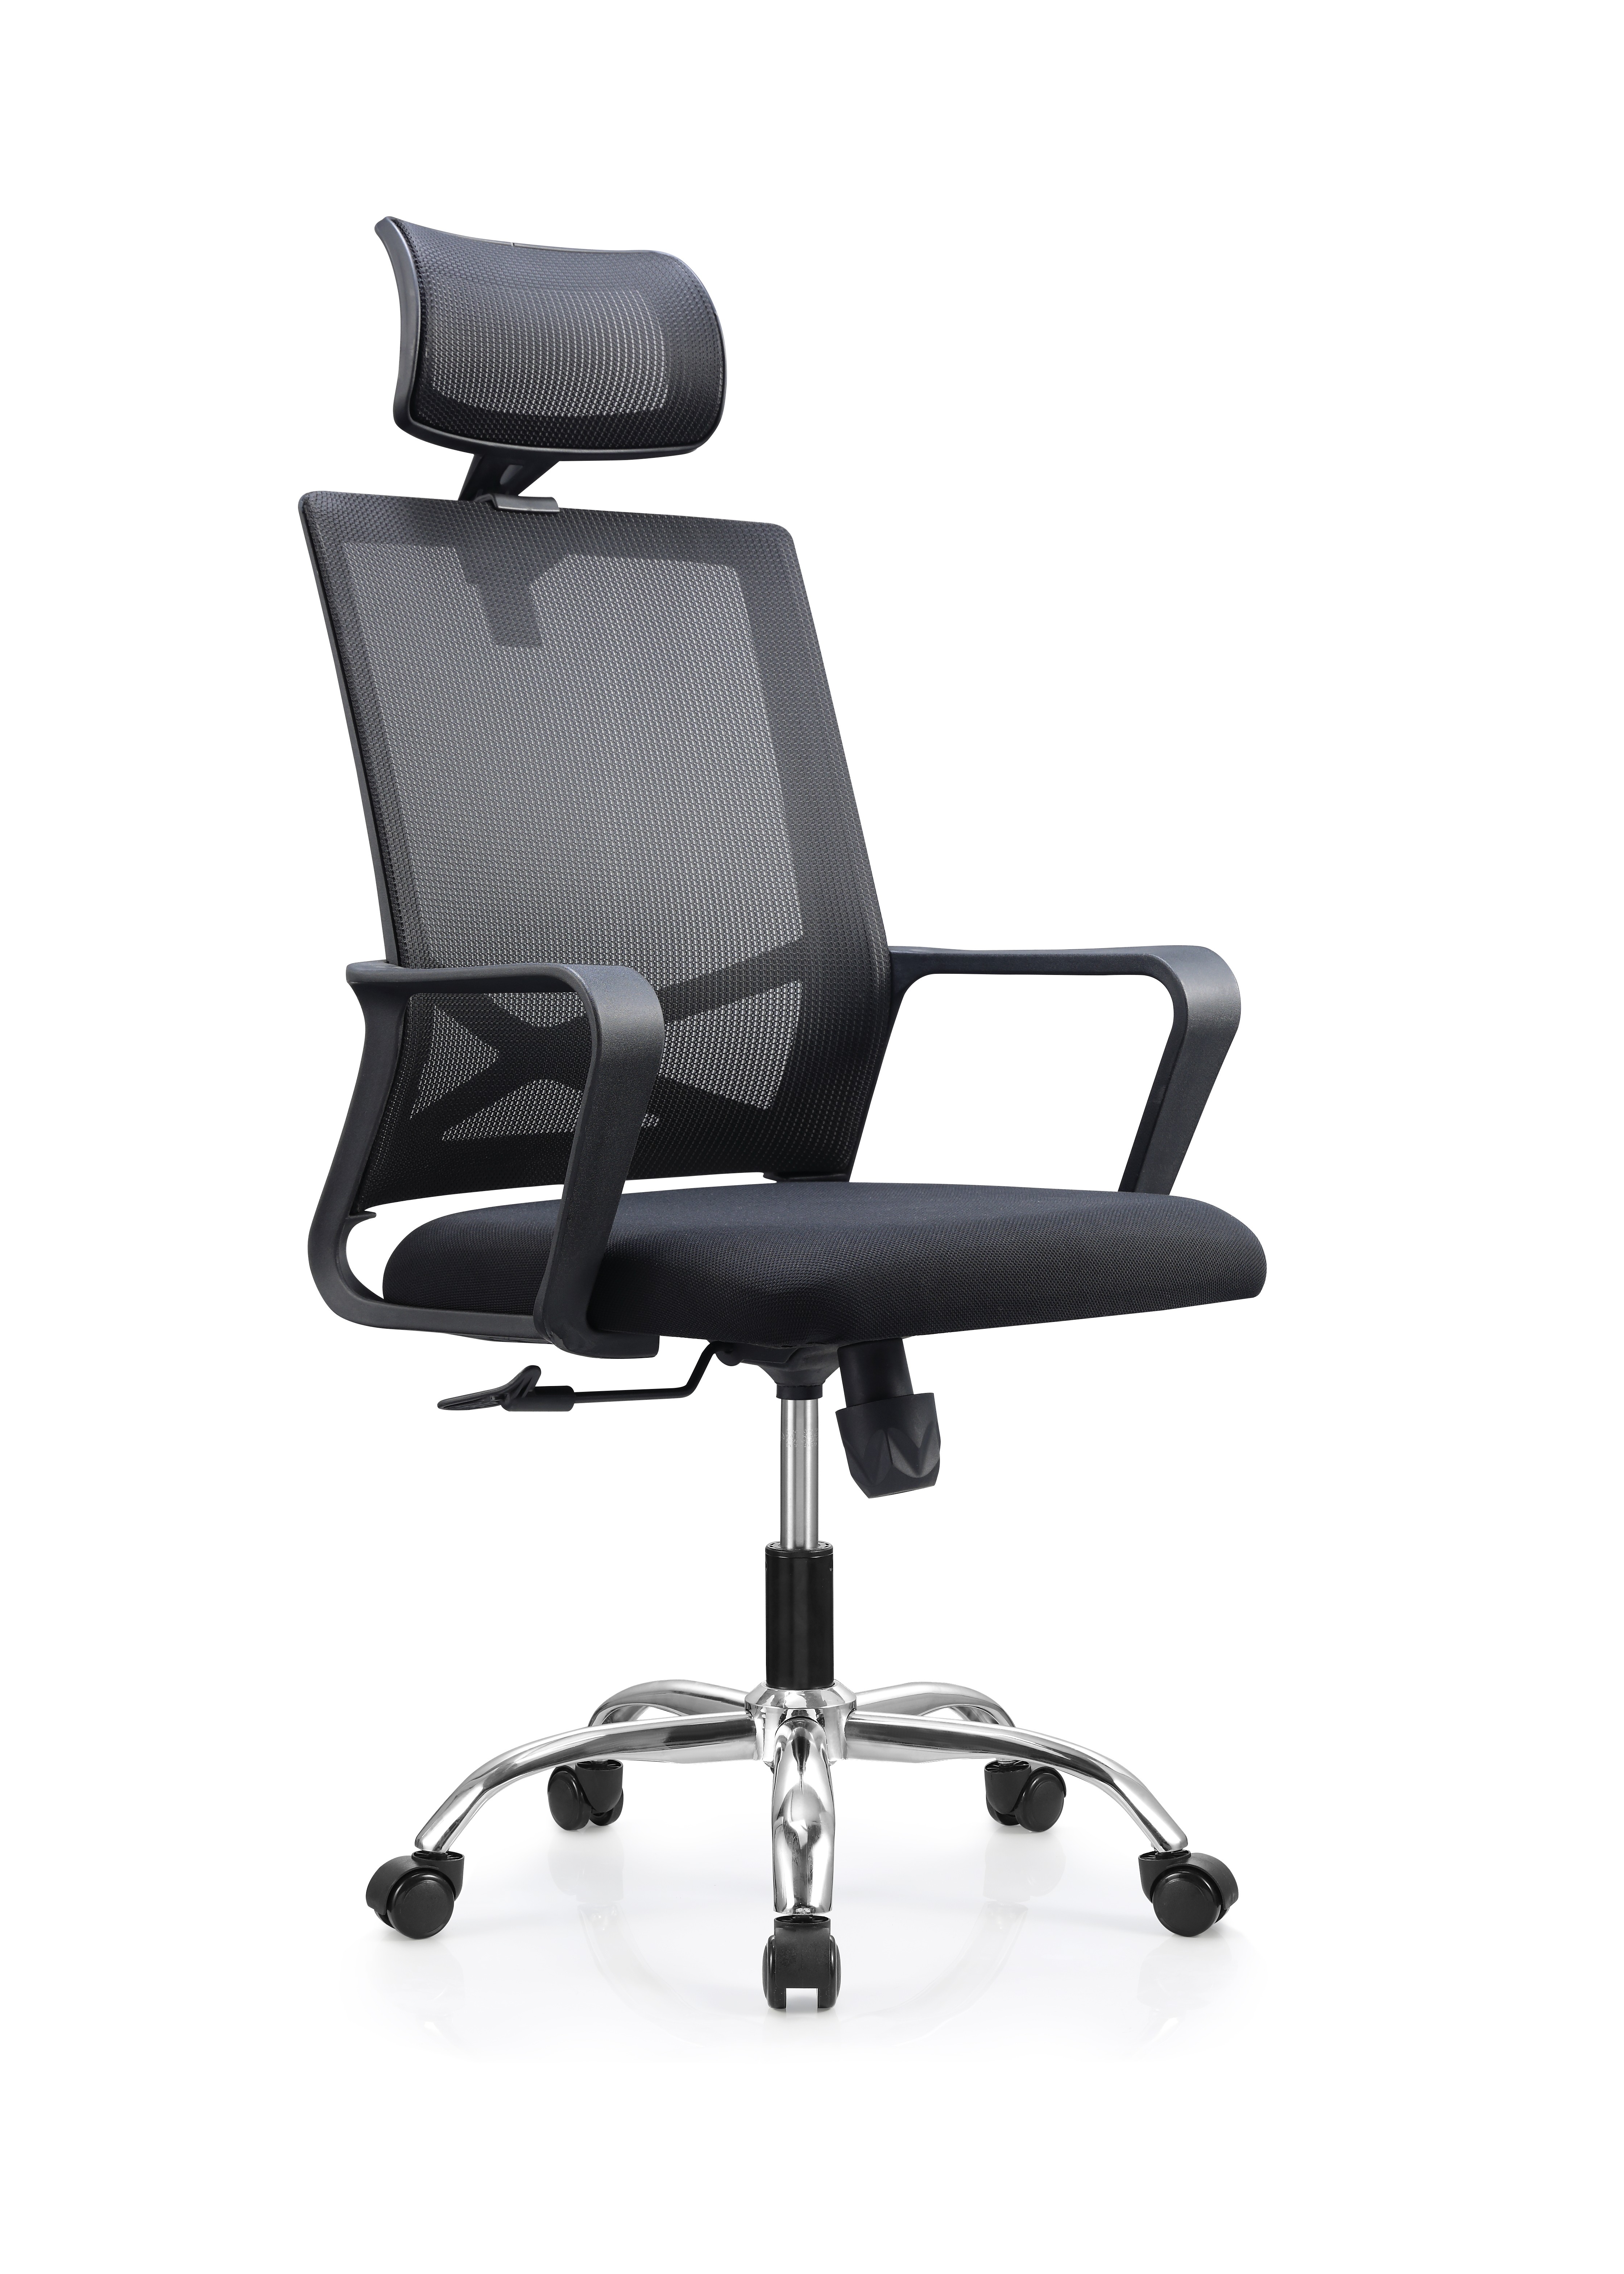 Newcity 552A Mobilier de conception moderne personnalisé chaise en maille à dossier haut appui-tête réglable chaise de bureau en maille exécutive bon prix fournisseur de chaise en maille moderne Foshan Chine